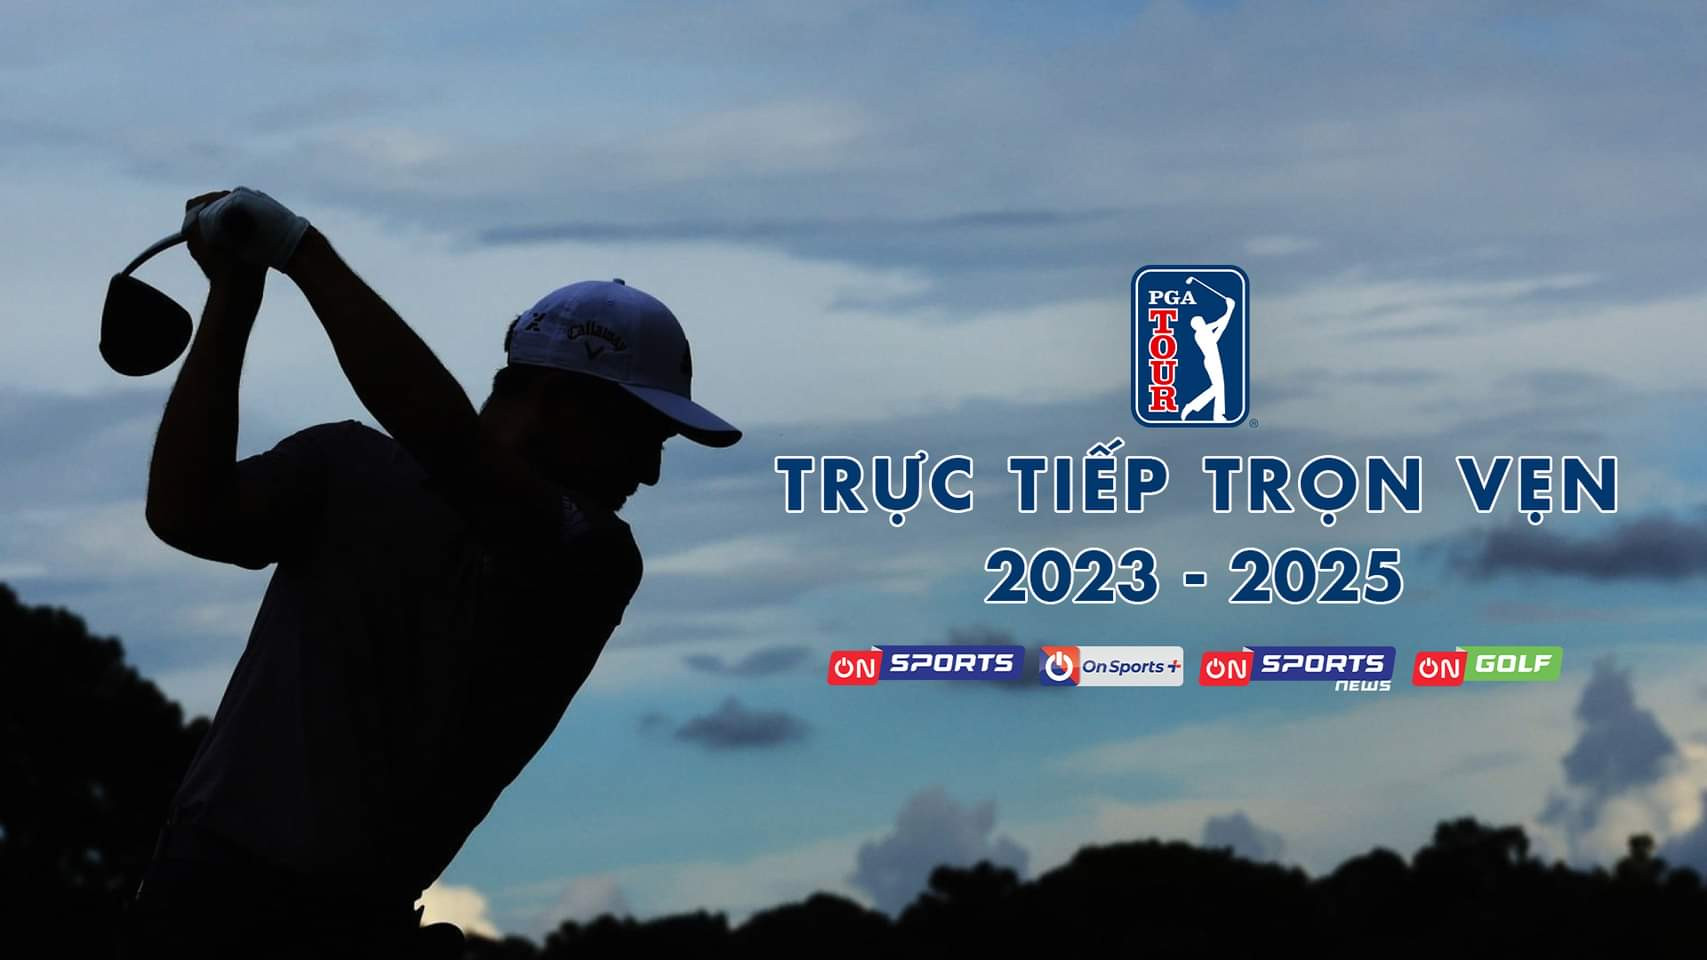 Khán giả được theo dõi trực tiếp PGA Tour từ mùa giải 2023 - 2025